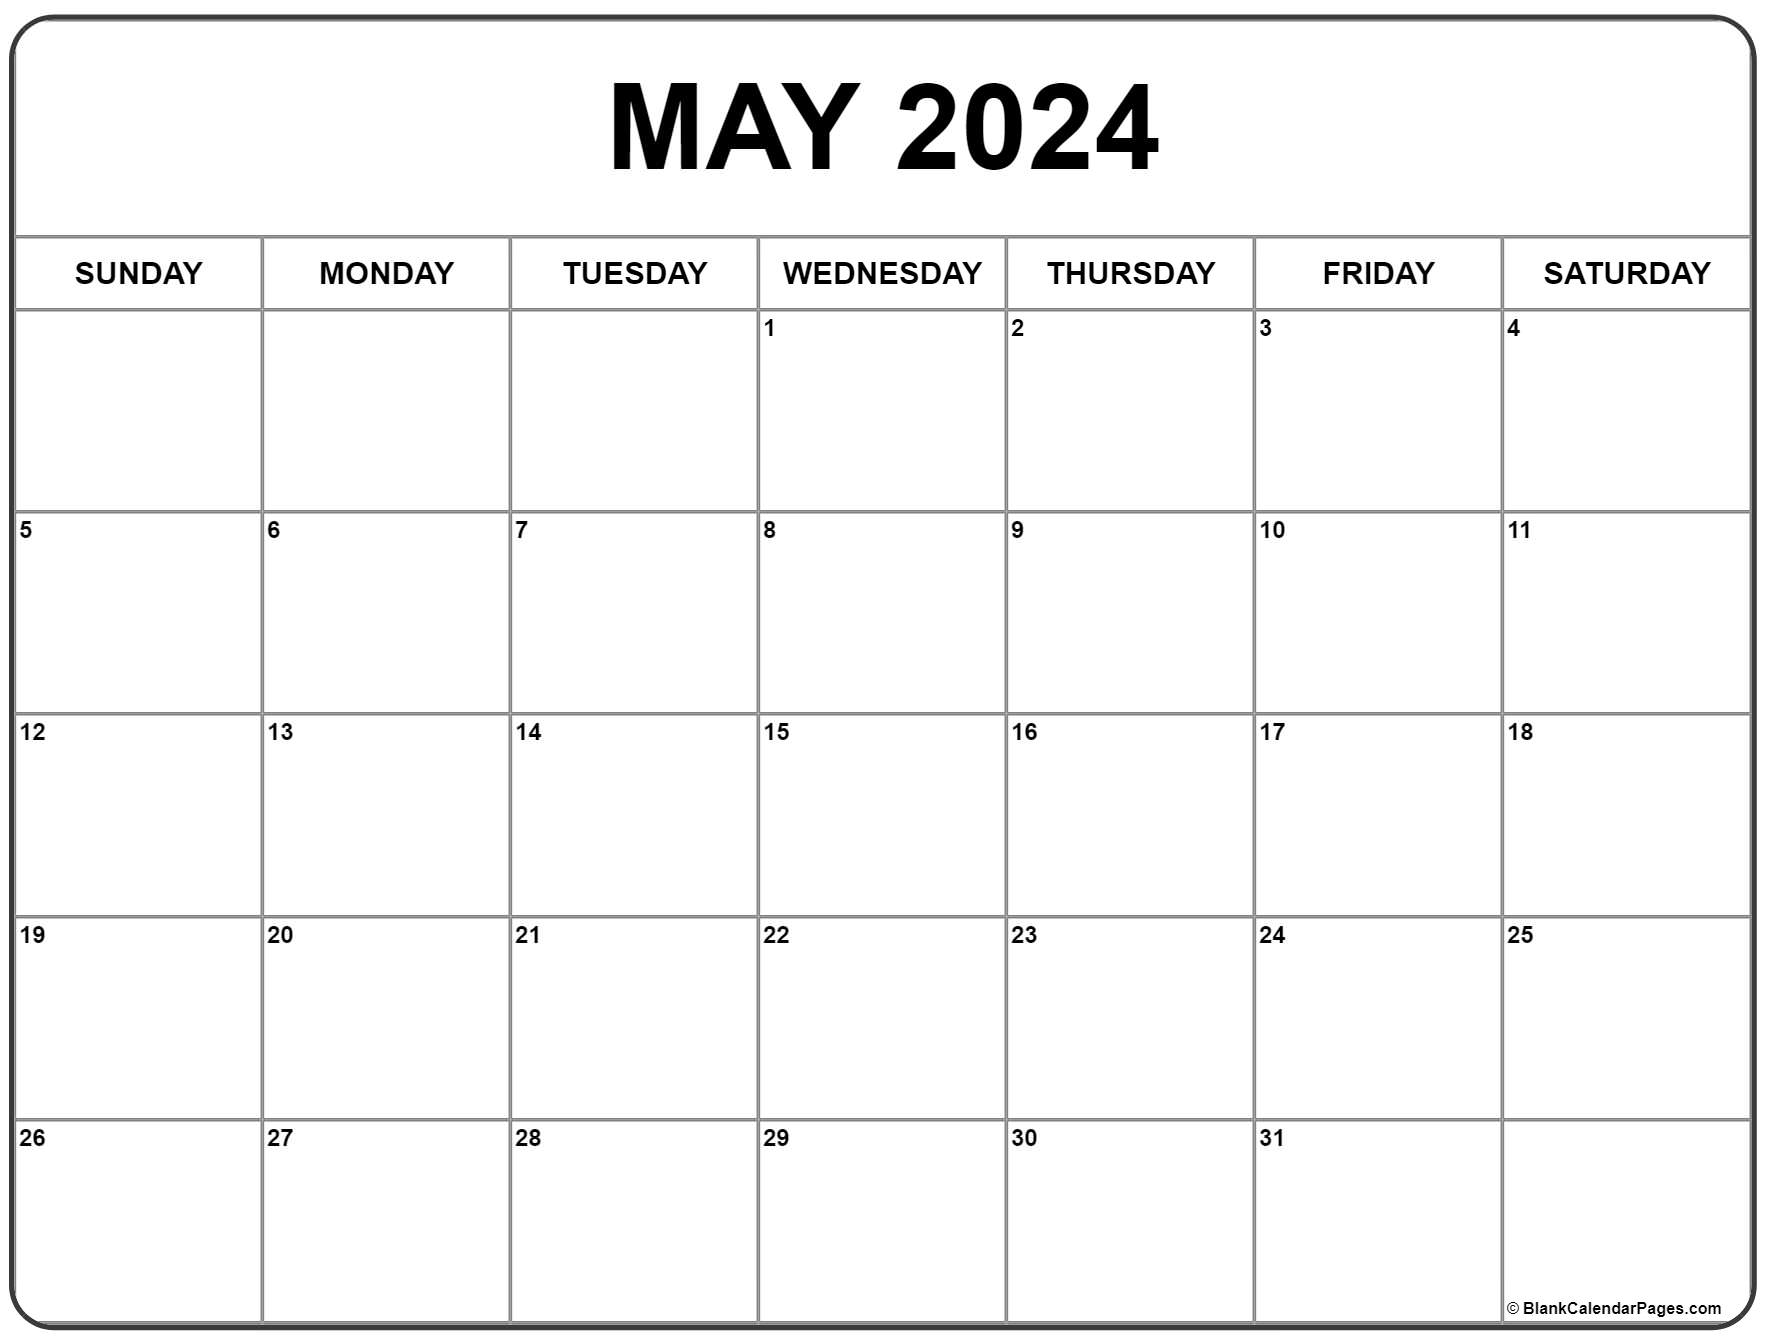 May 2024 Calendar | Free Printable Calendar for Printable Calendar 2024 May June July